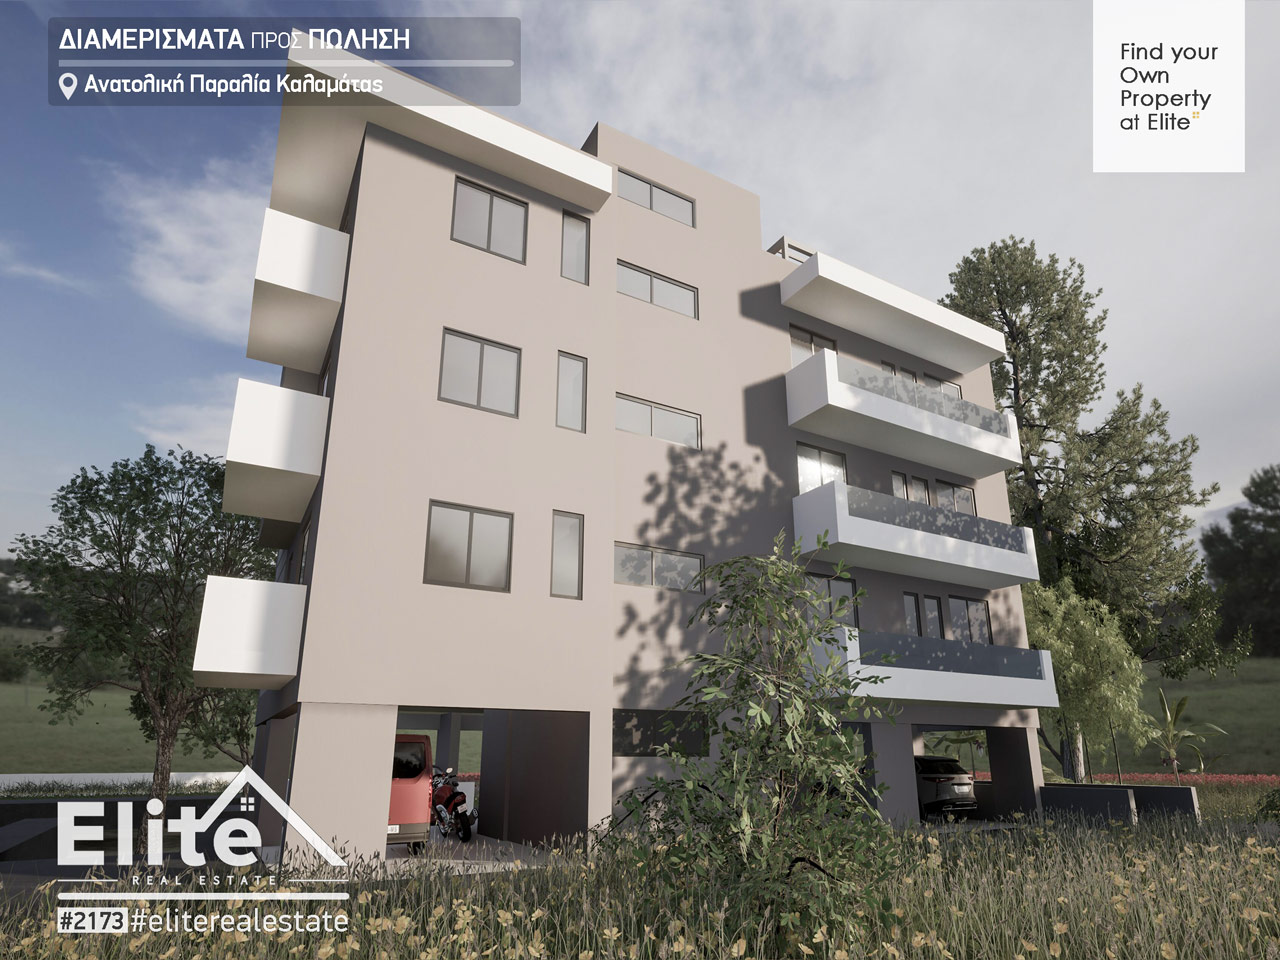 Sales of newly built apartments Kalamata 2023